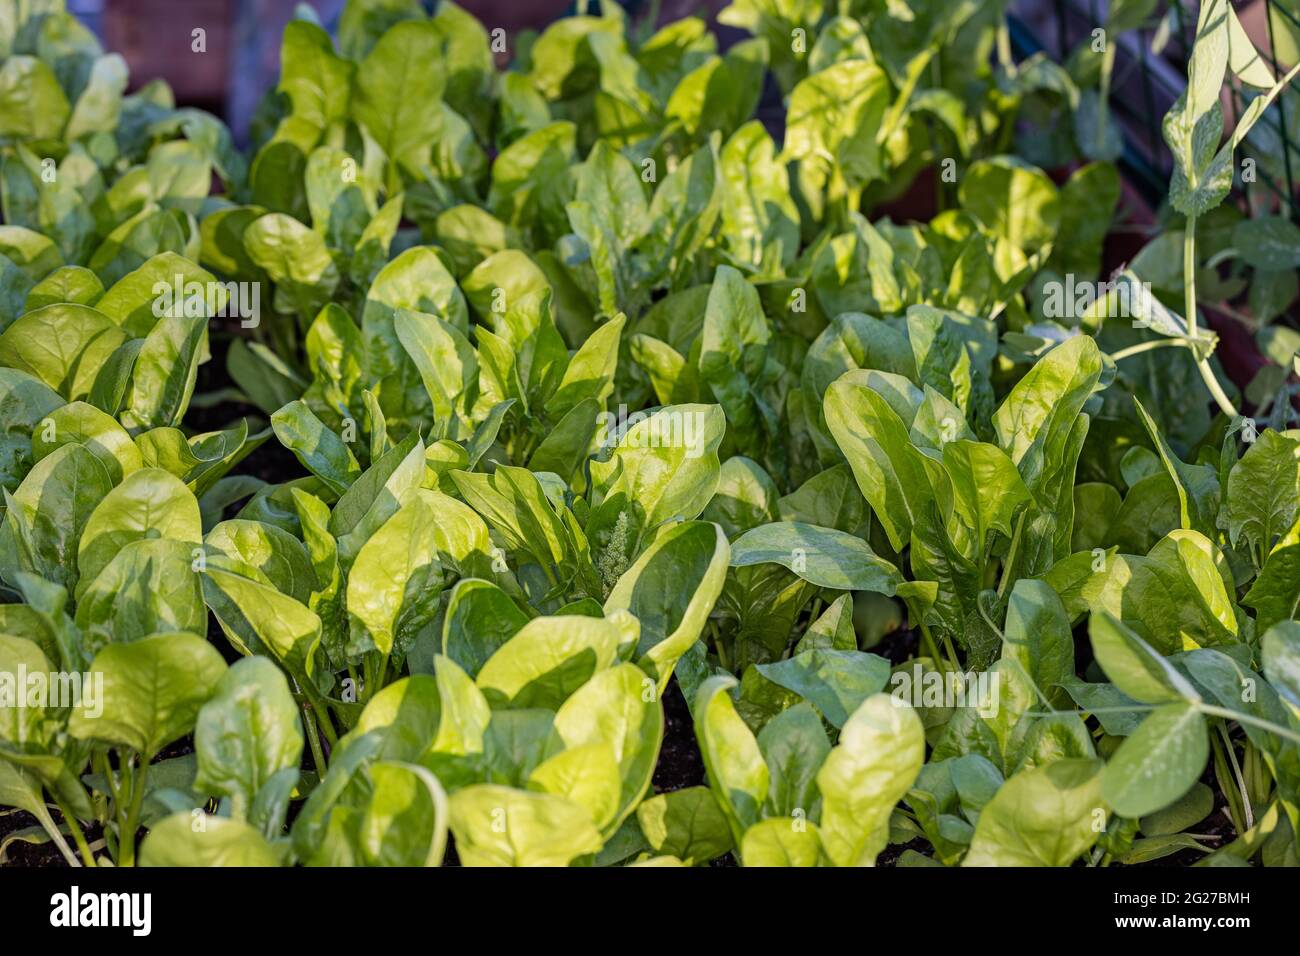 'Gigante d’inverno' Spinach, Spenat (Spinacia oleracea) Stock Photo